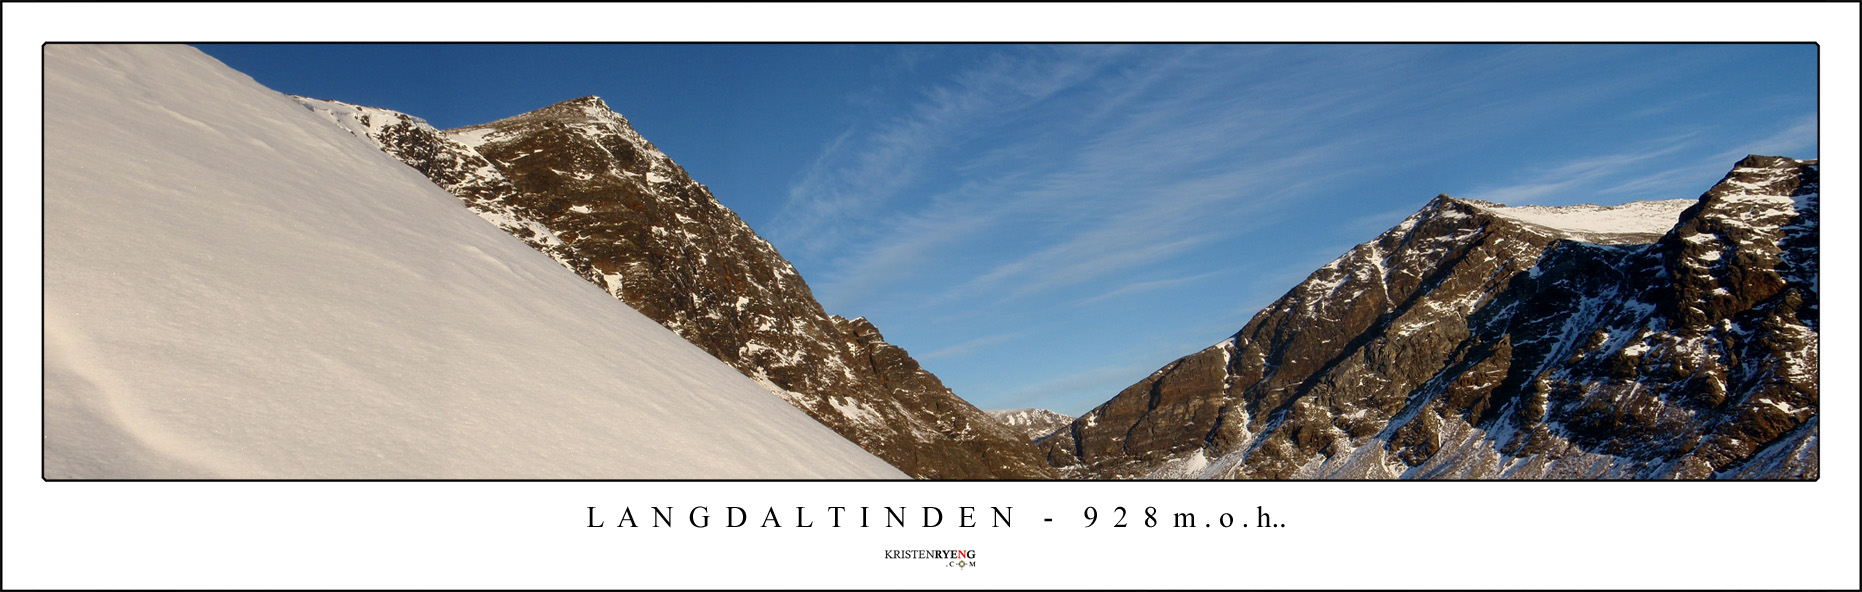 Panorama-Langdaltinden6.jpg - Utsikt mot Langdaltinden (928 moh). Her på vei opp. Toppen ses oppe til venstre.